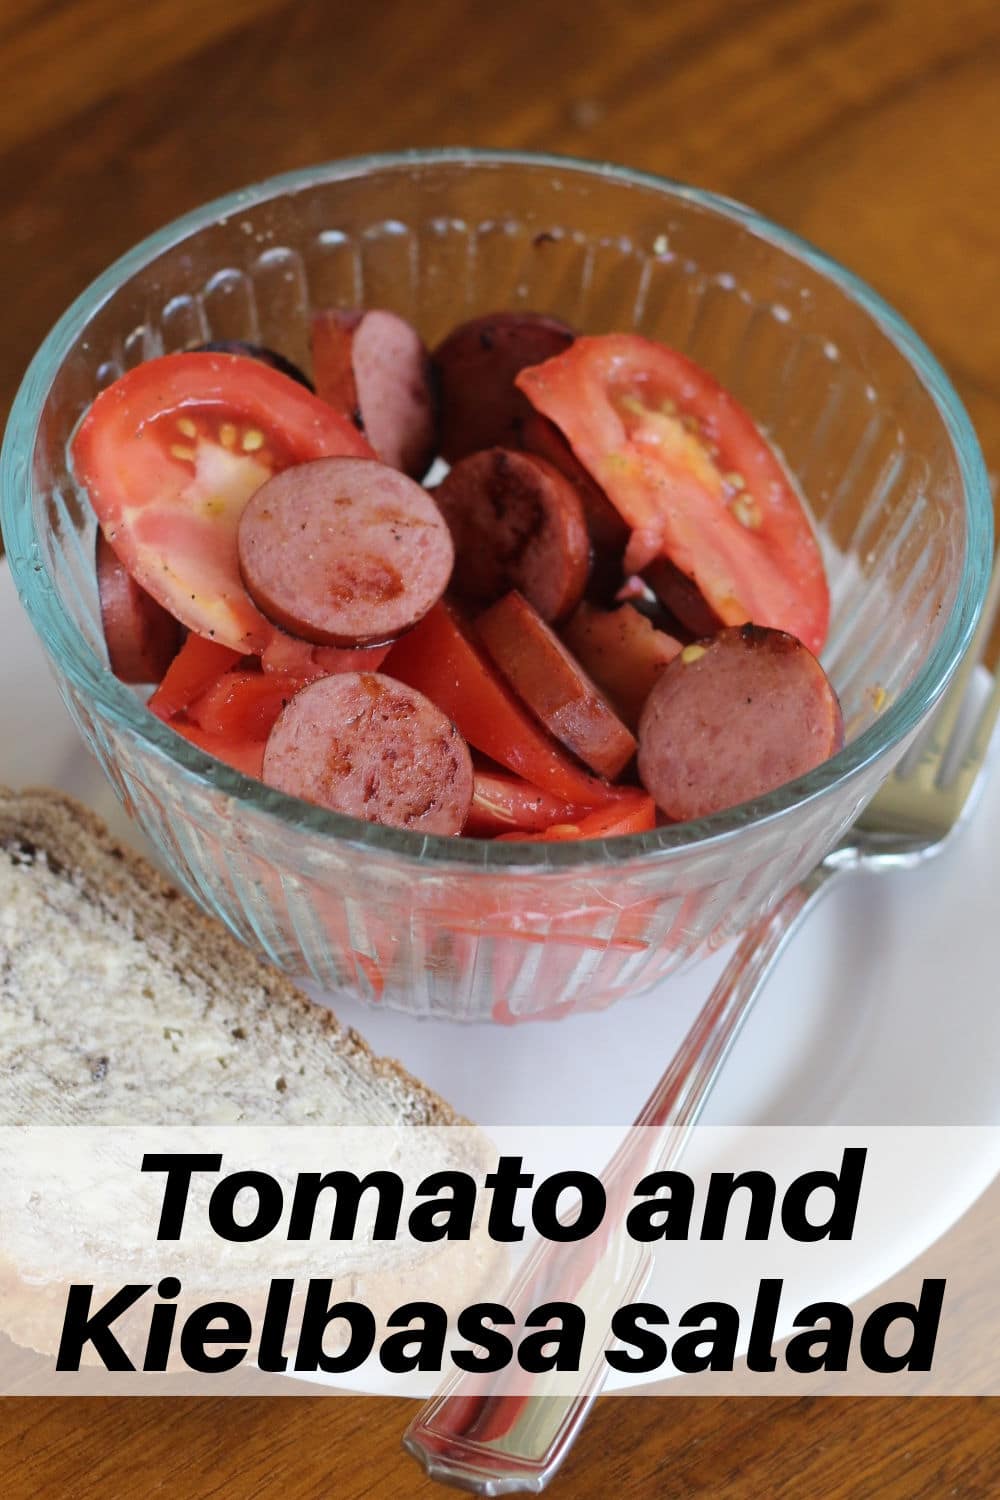 Tomato and kielbasa